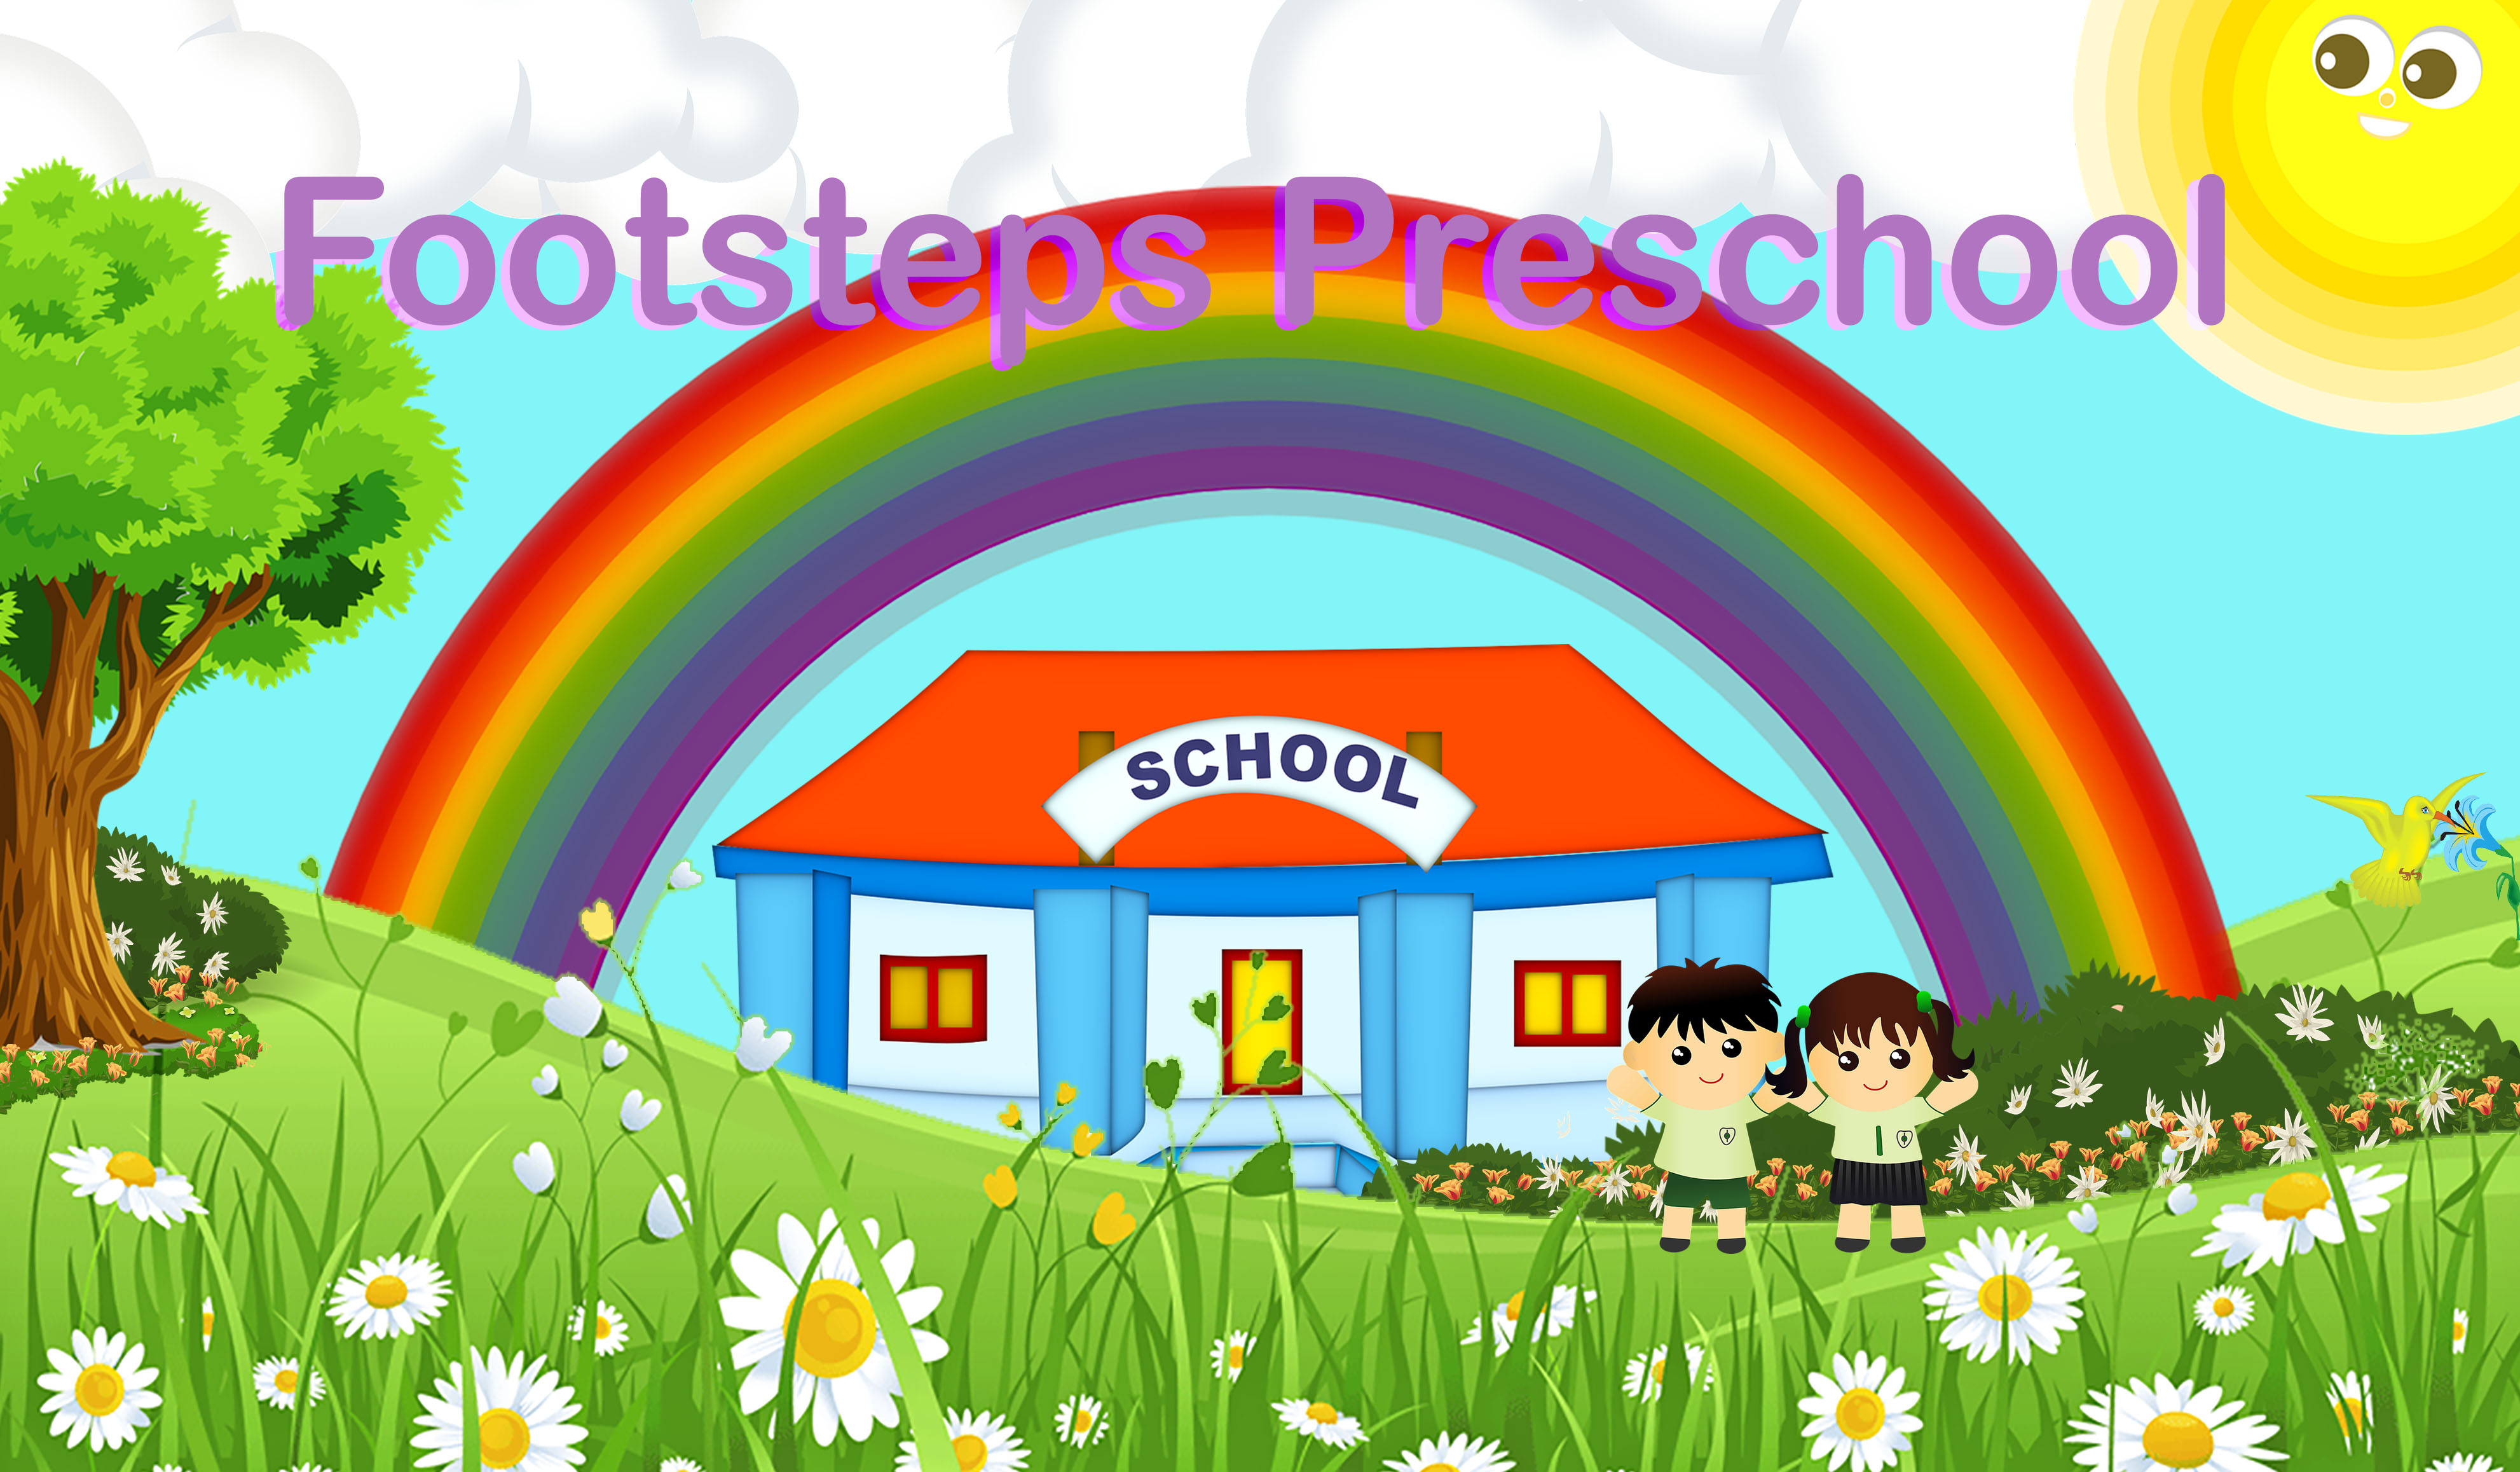 Preschool, Rainbow over School, Flowers, Green Fields